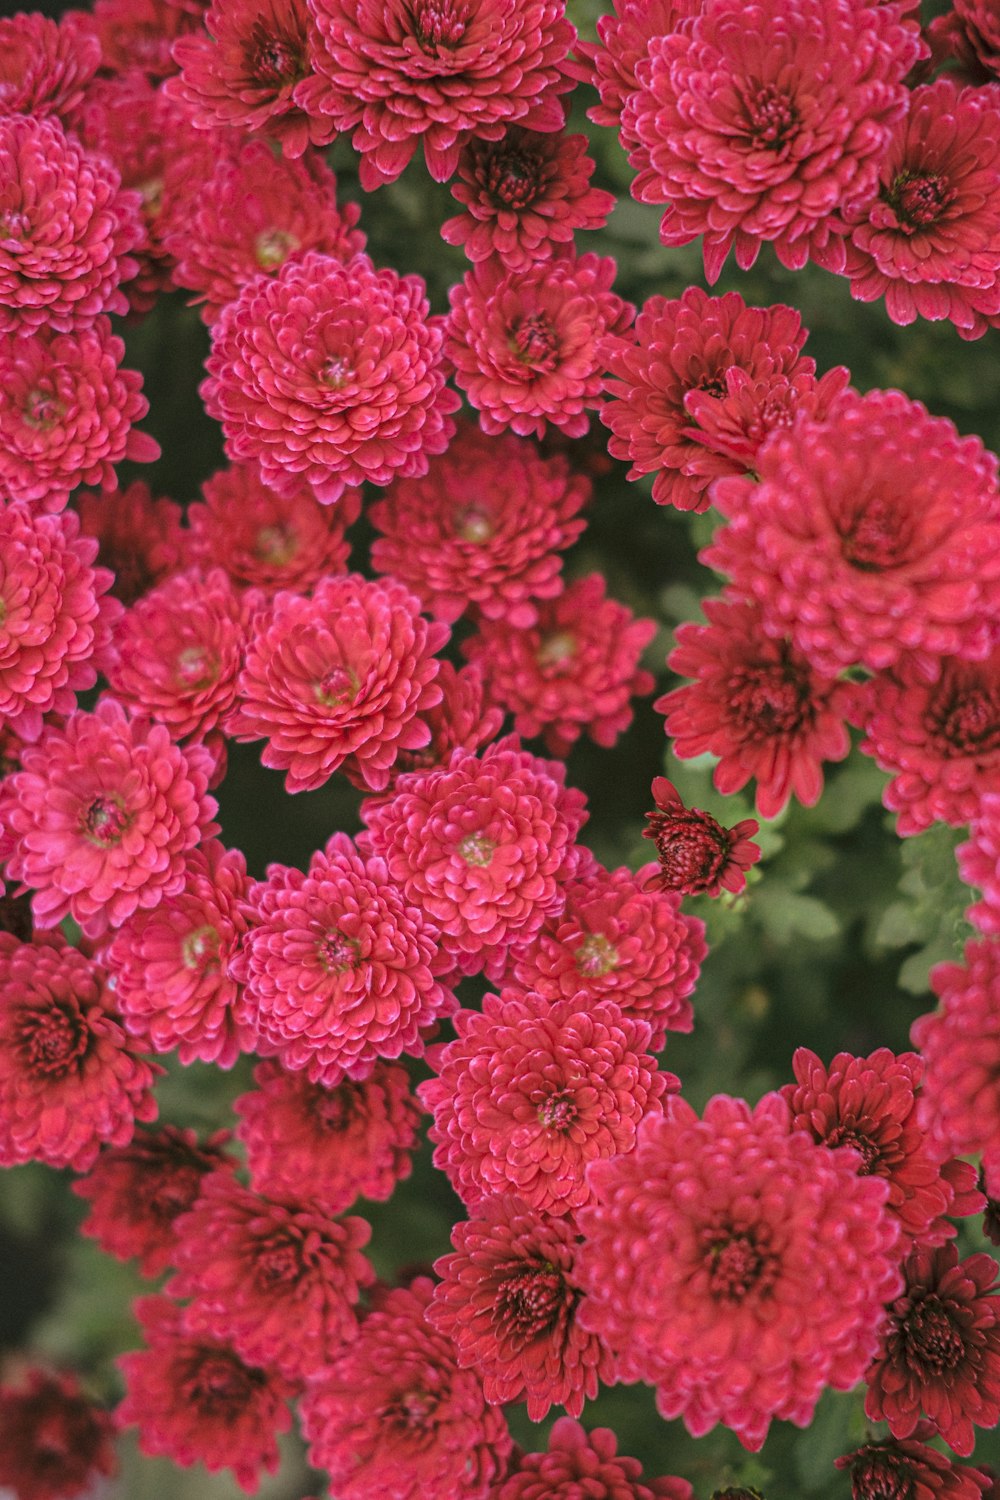 red flowers in tilt shift lens